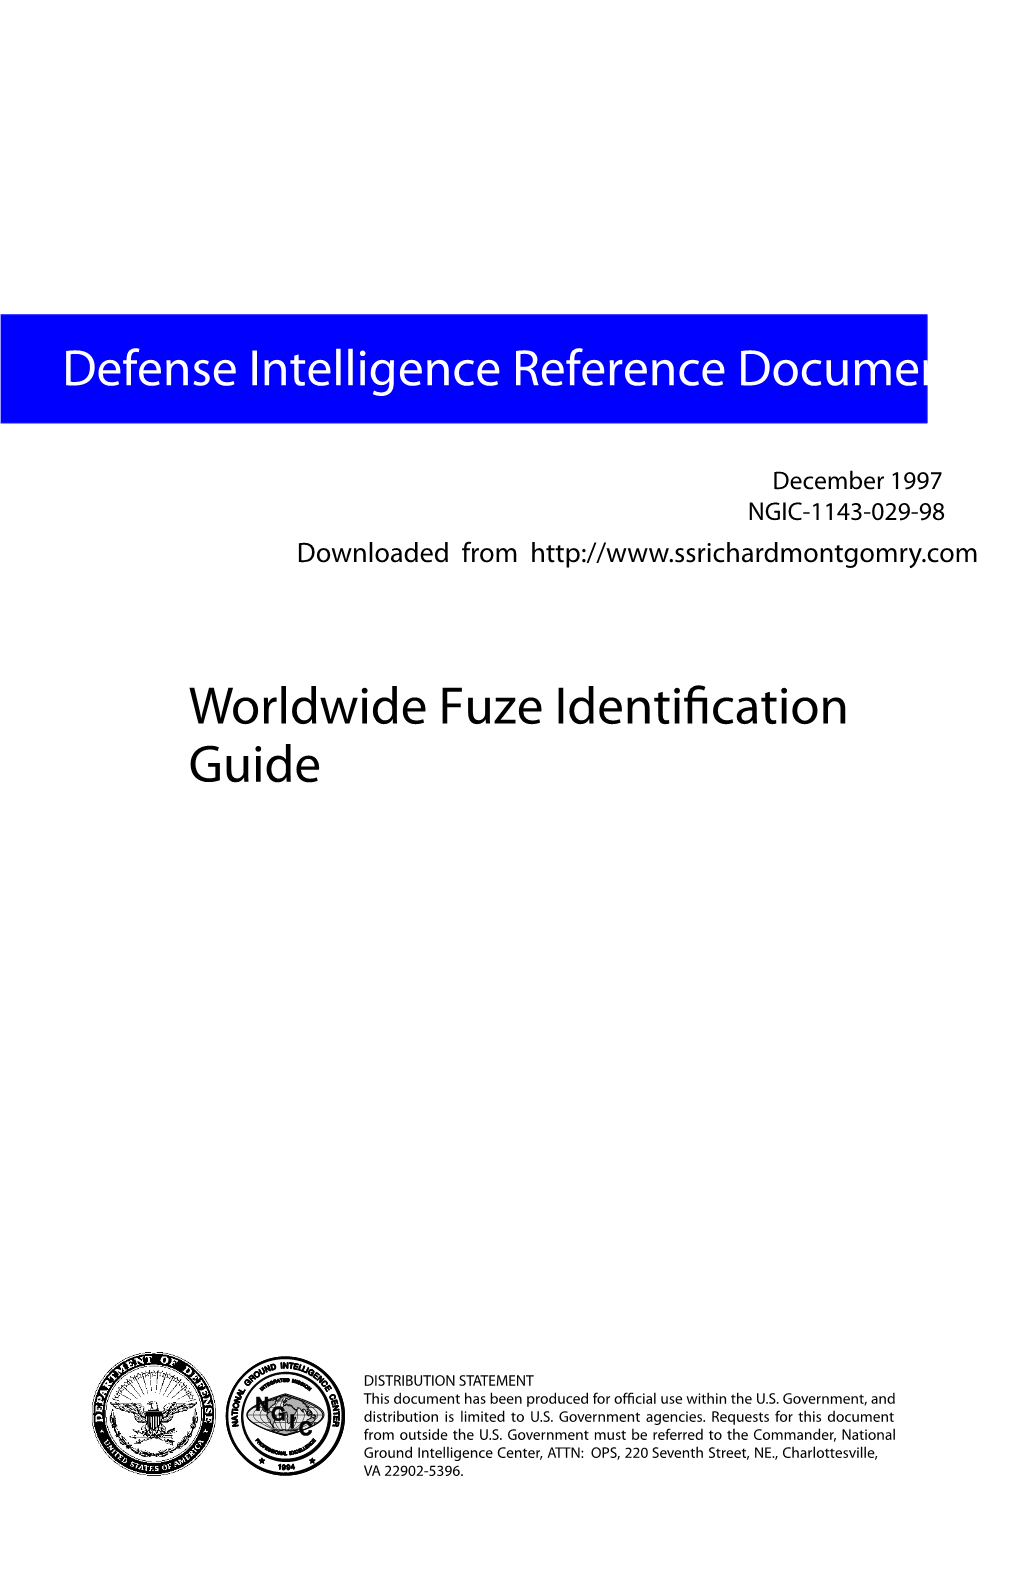 Worldwide Fuze Identification Guide